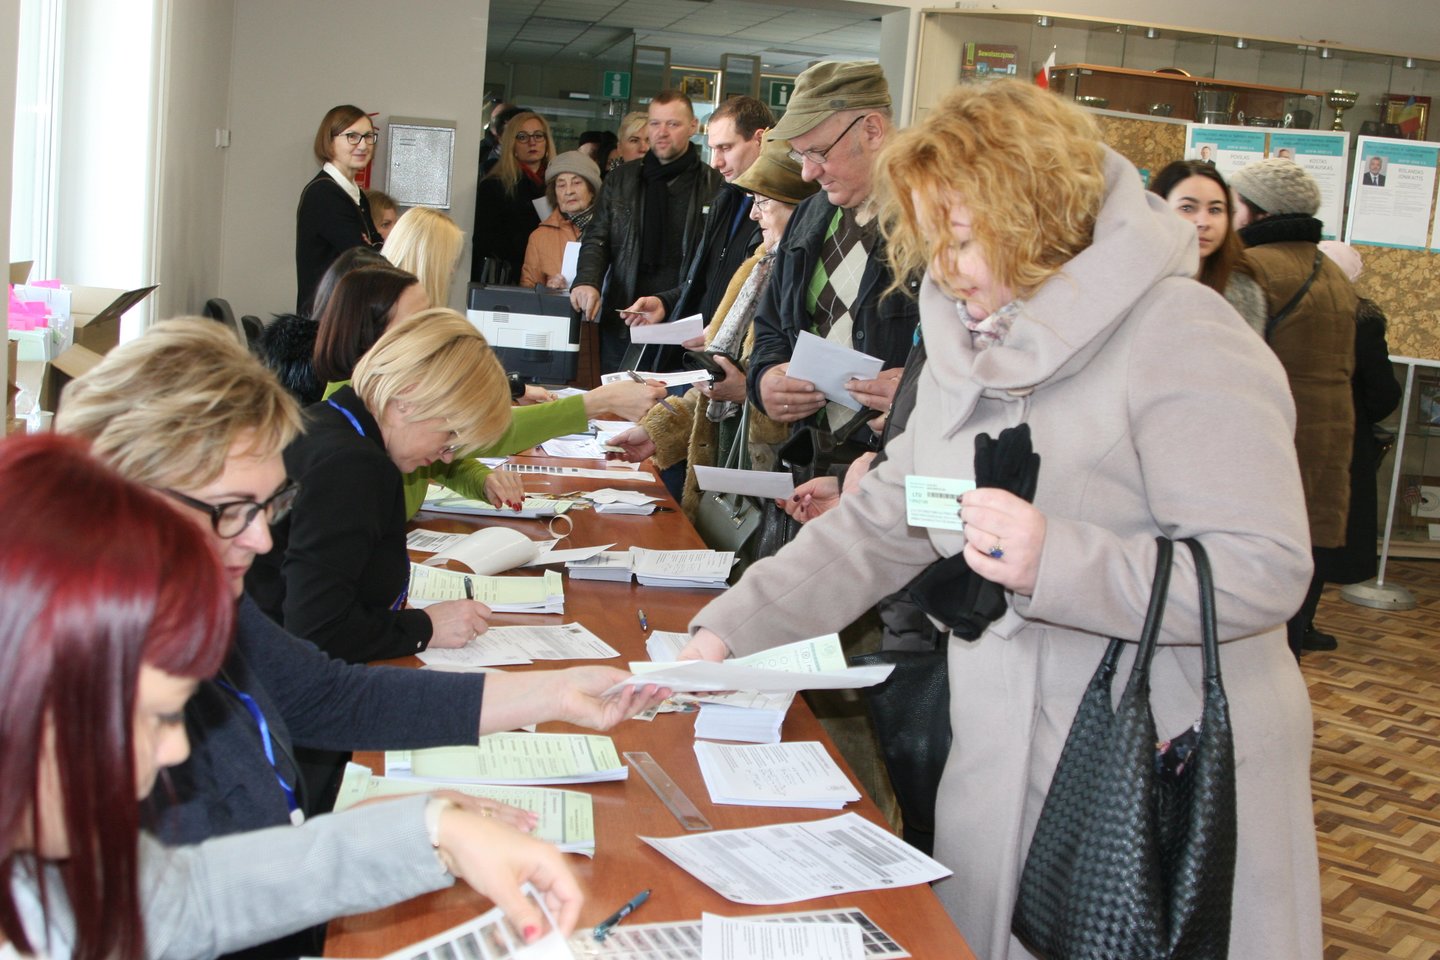  Pirmąją išankstinio balsavimo dieną savo nuomonę pareiškė keli šimtai marijampoliečių. <br> L.Juodzevičienės nuotr.